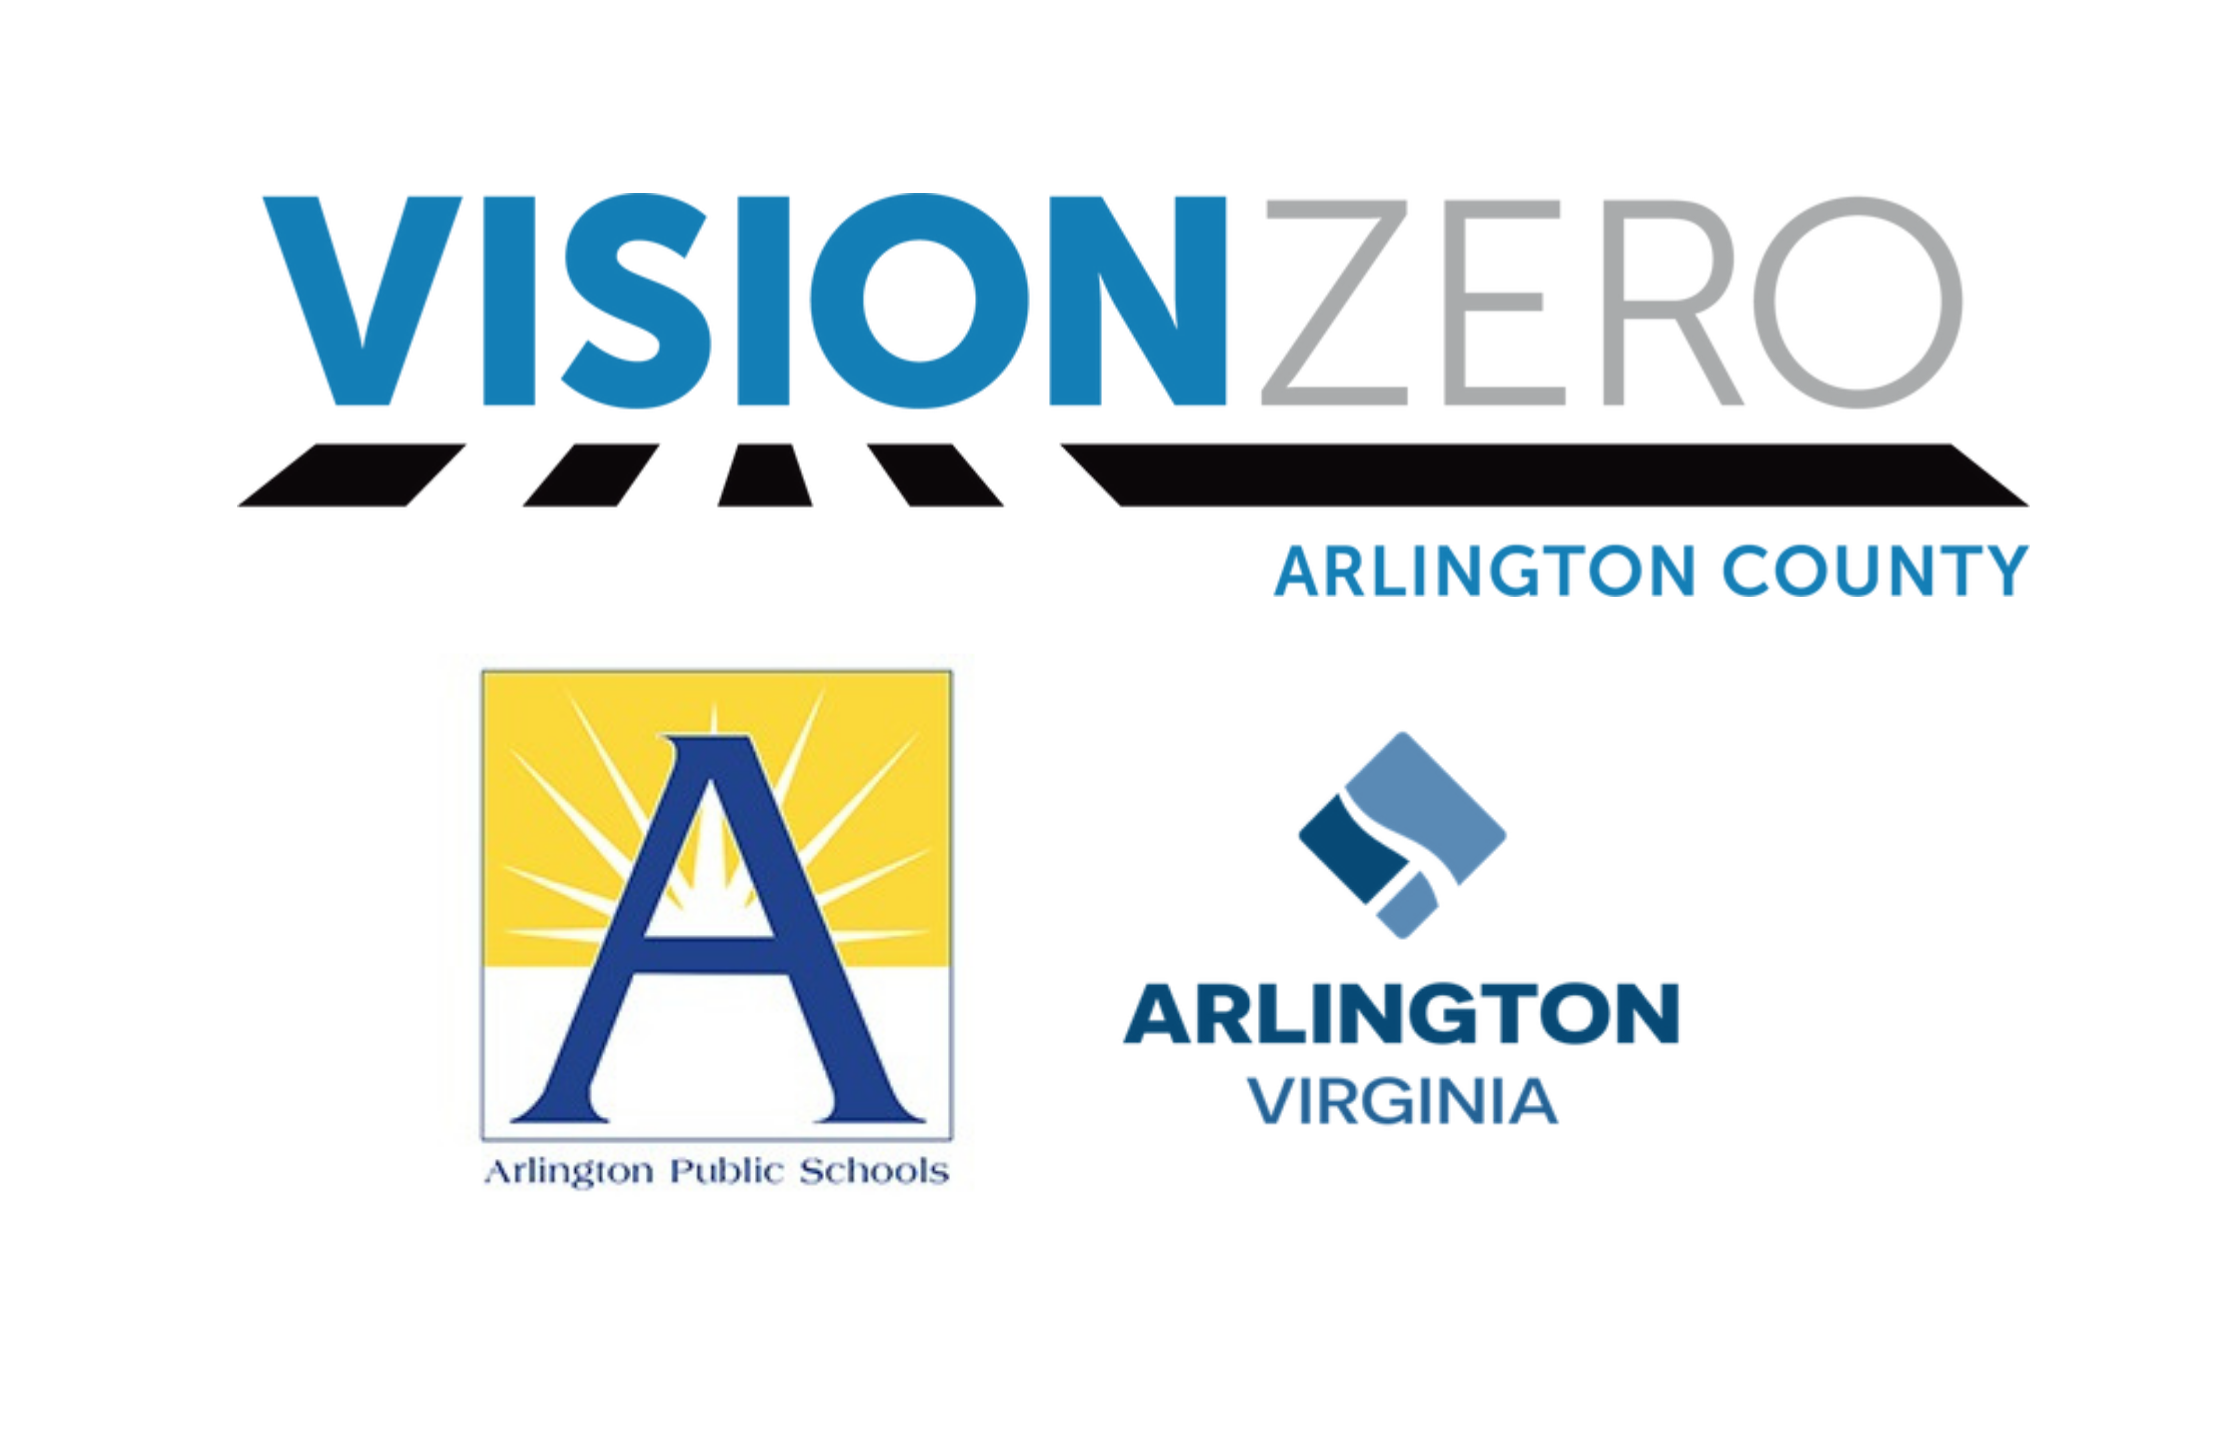 VisionZero logo, APS logo, Arlington County logo